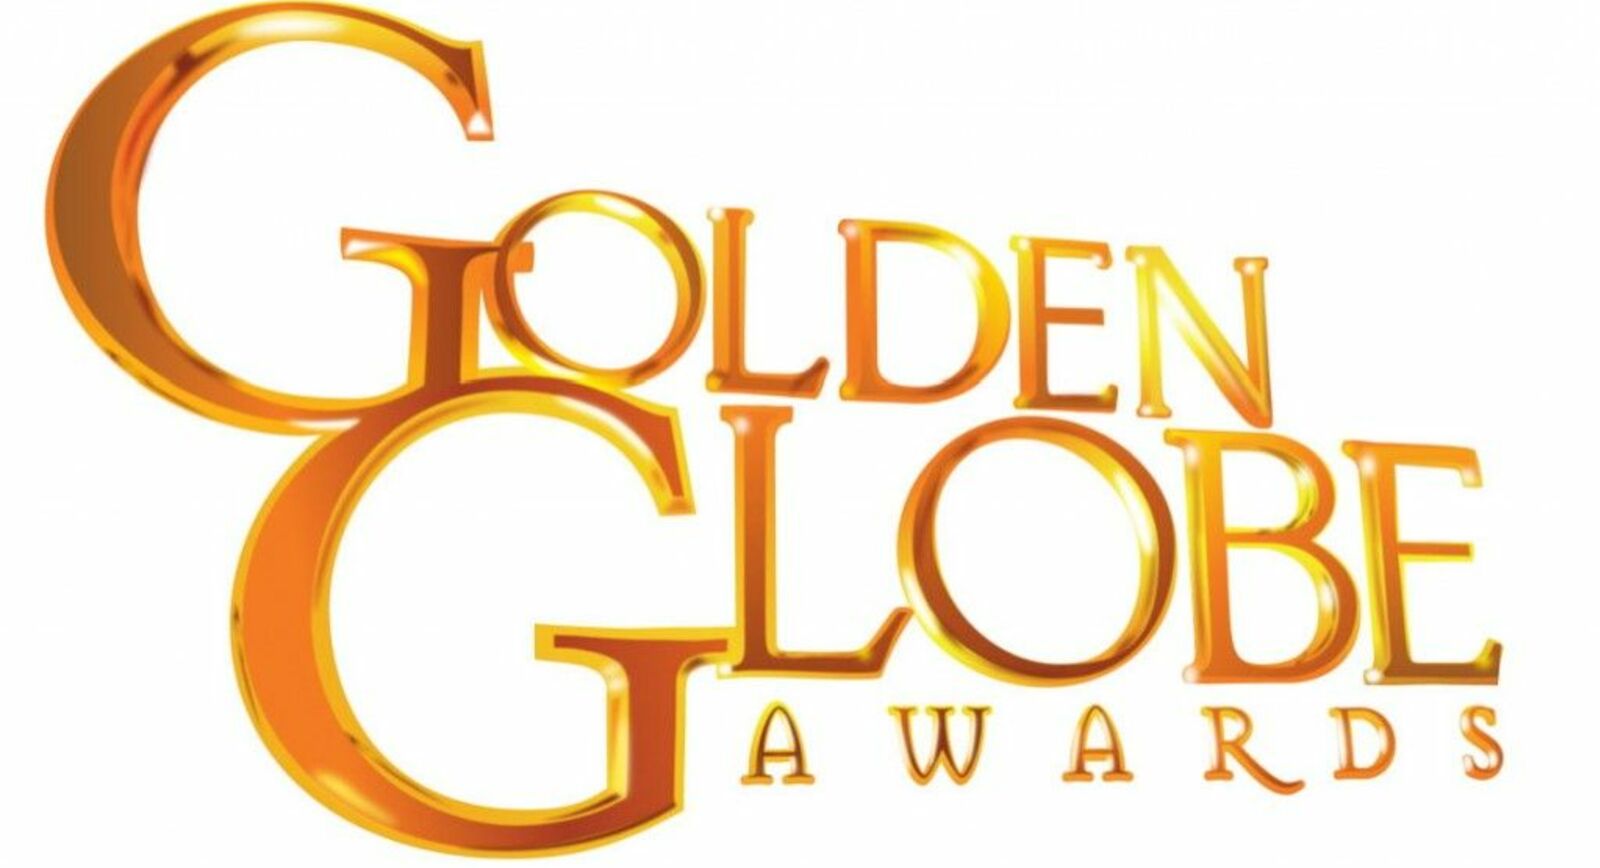 Золотой глобус 2014: ювелирные трендыОслепительные бриллианты